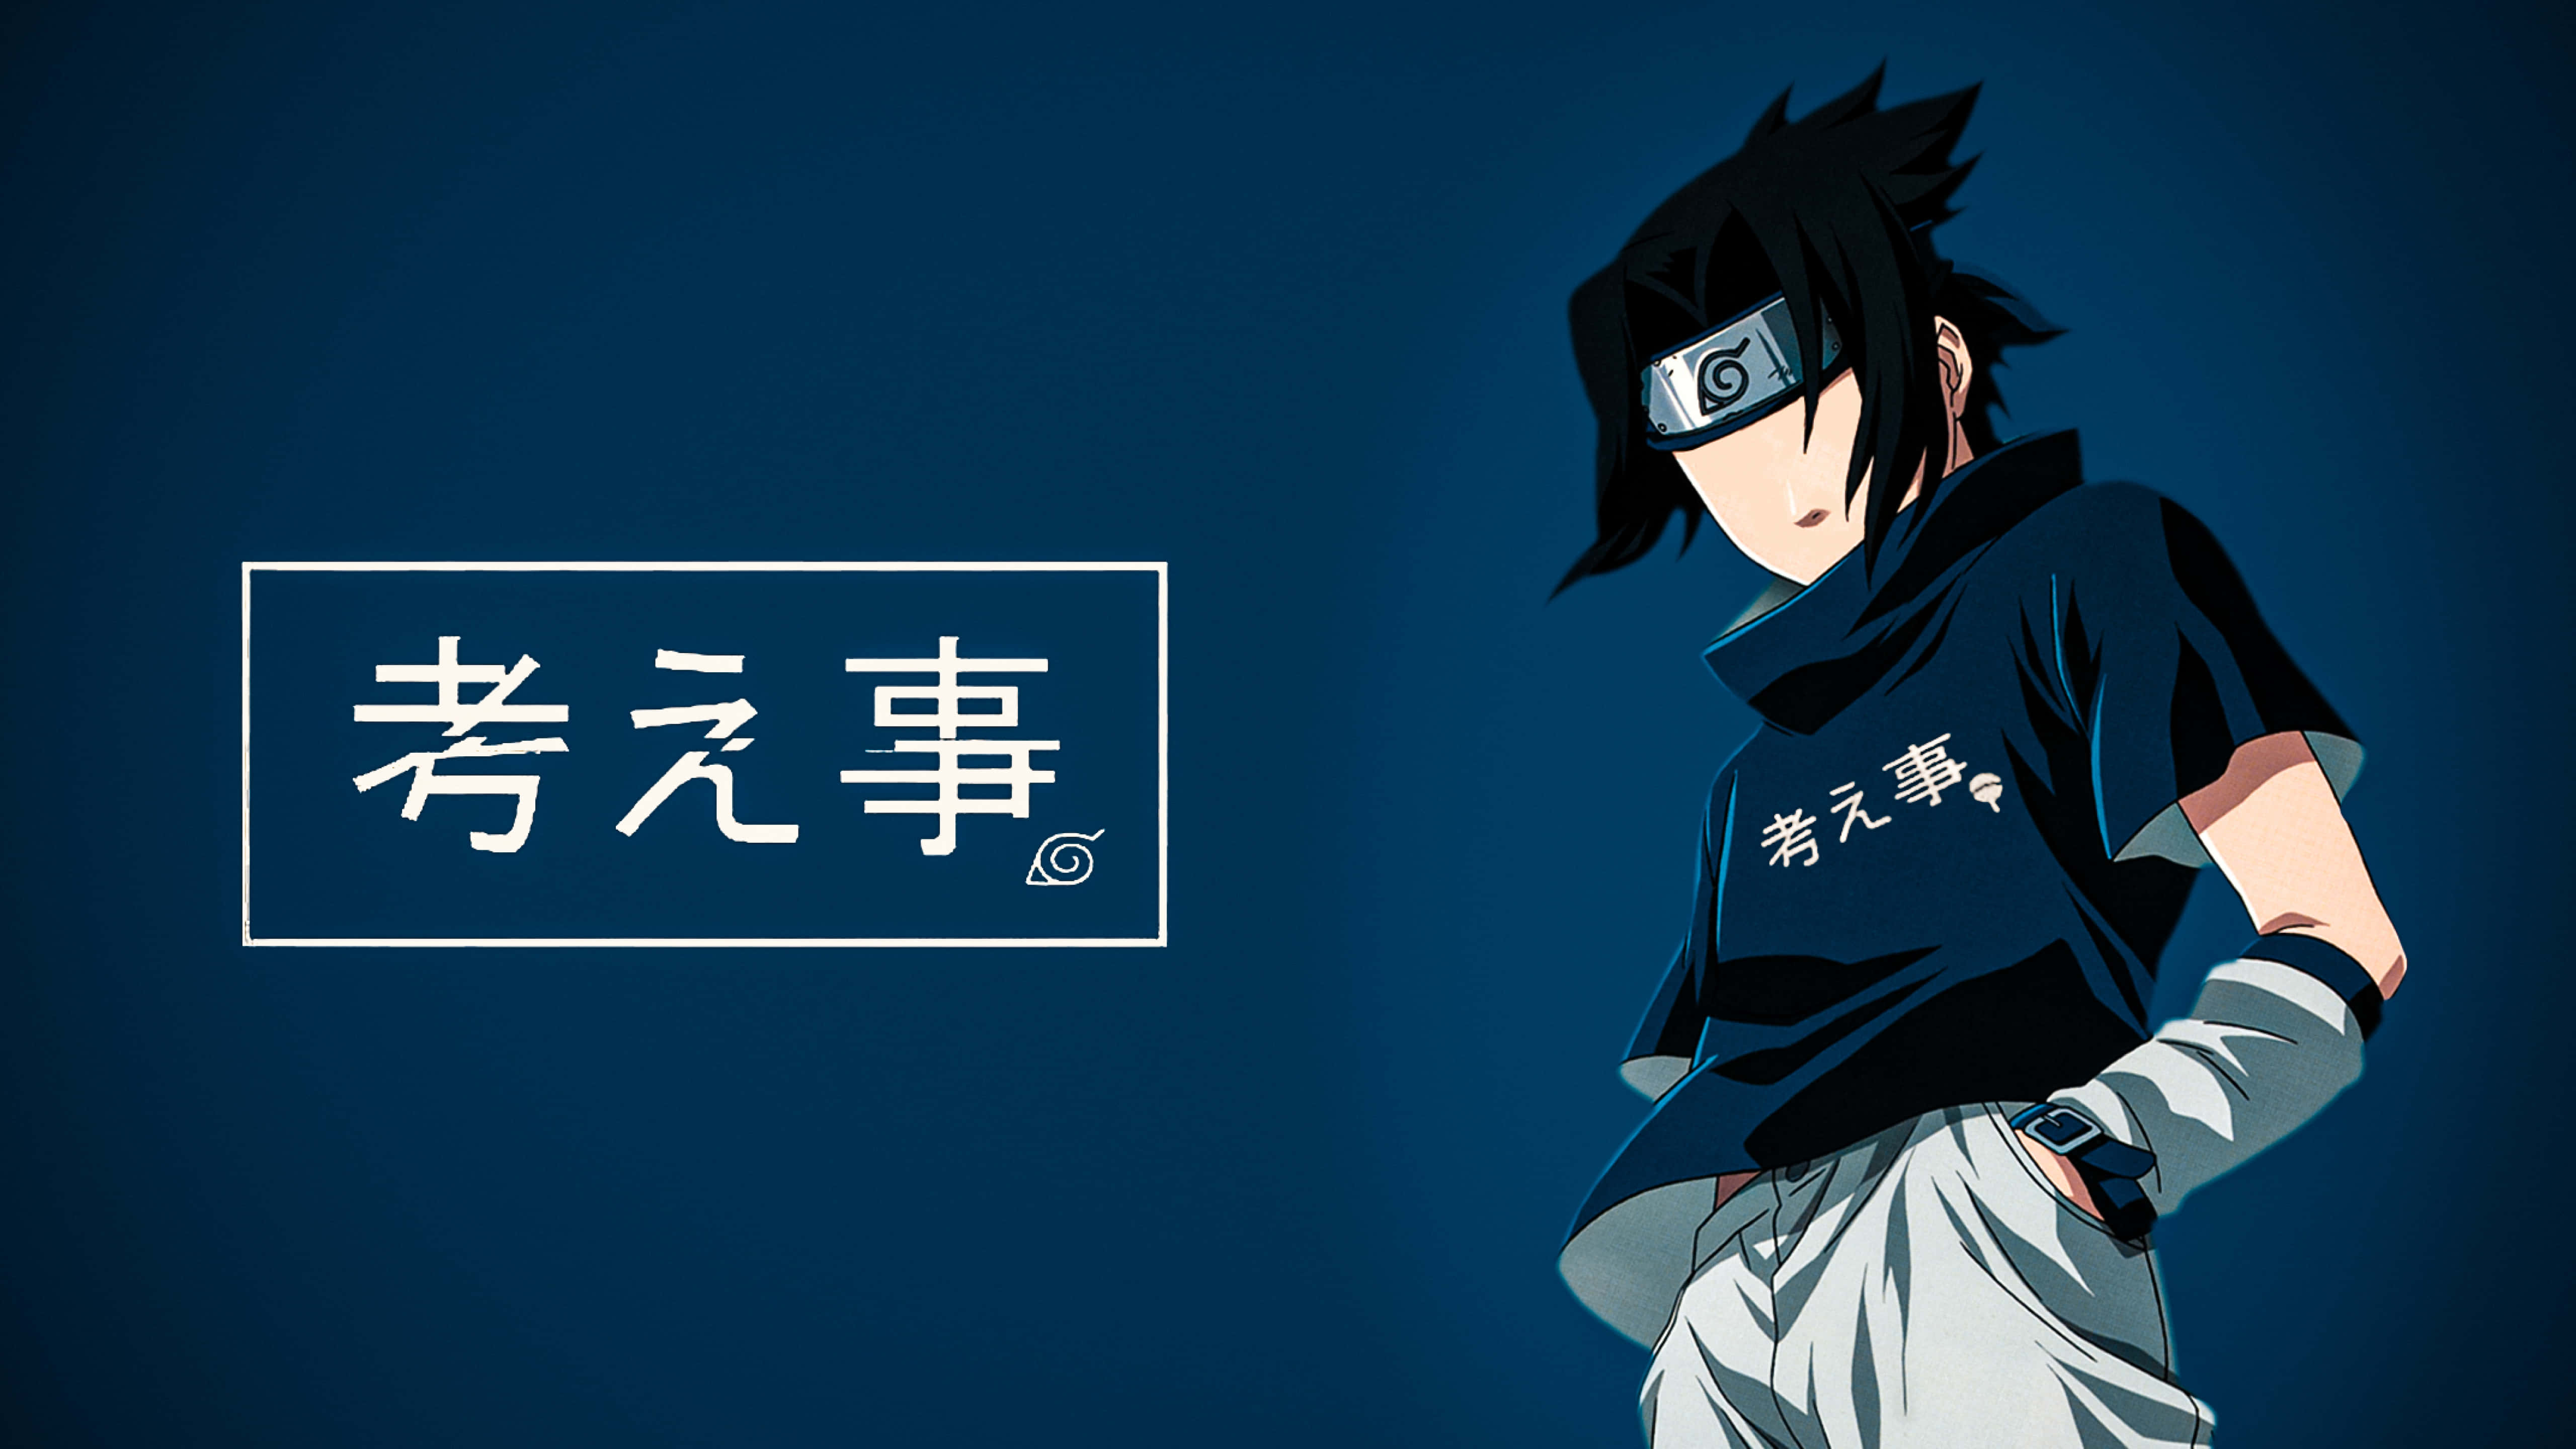 Free Blue Sasuke Wallpaper Downloads Bạn đam mê màu Xanh? Và bạn yêu thích nhân vật Uchiha Sasuke trong Naruto? Vậy thì, đừng chần chừ gì nữa, hãy tải xuống miễn phí bức ảnh wallpaper với màu xanh bắt mắt và hình ảnh Sasuke hấp dẫn để cùng nhìn lại những khoảnh khắc đáng nhớ trong thế giới anime.